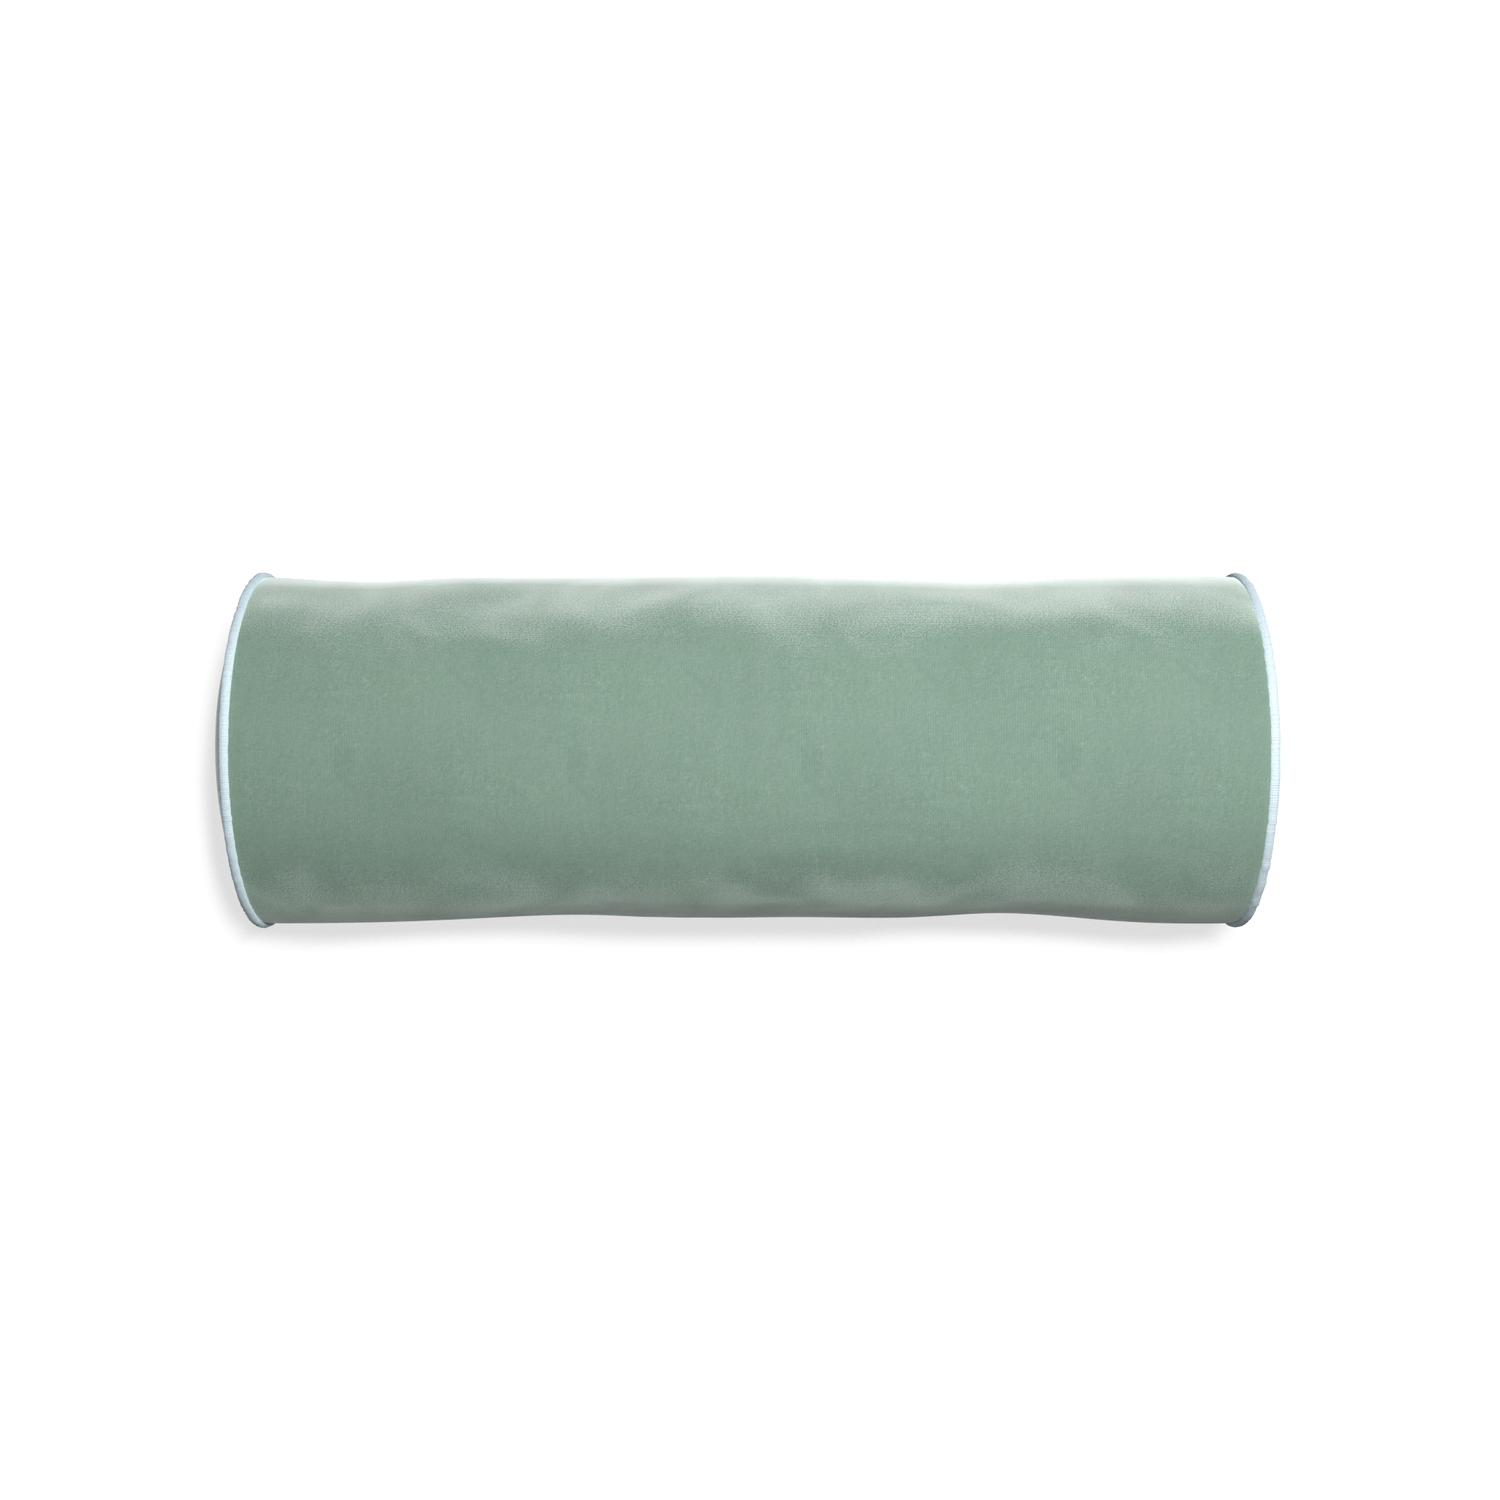 bolster blue green velvet pillow with light blue piping